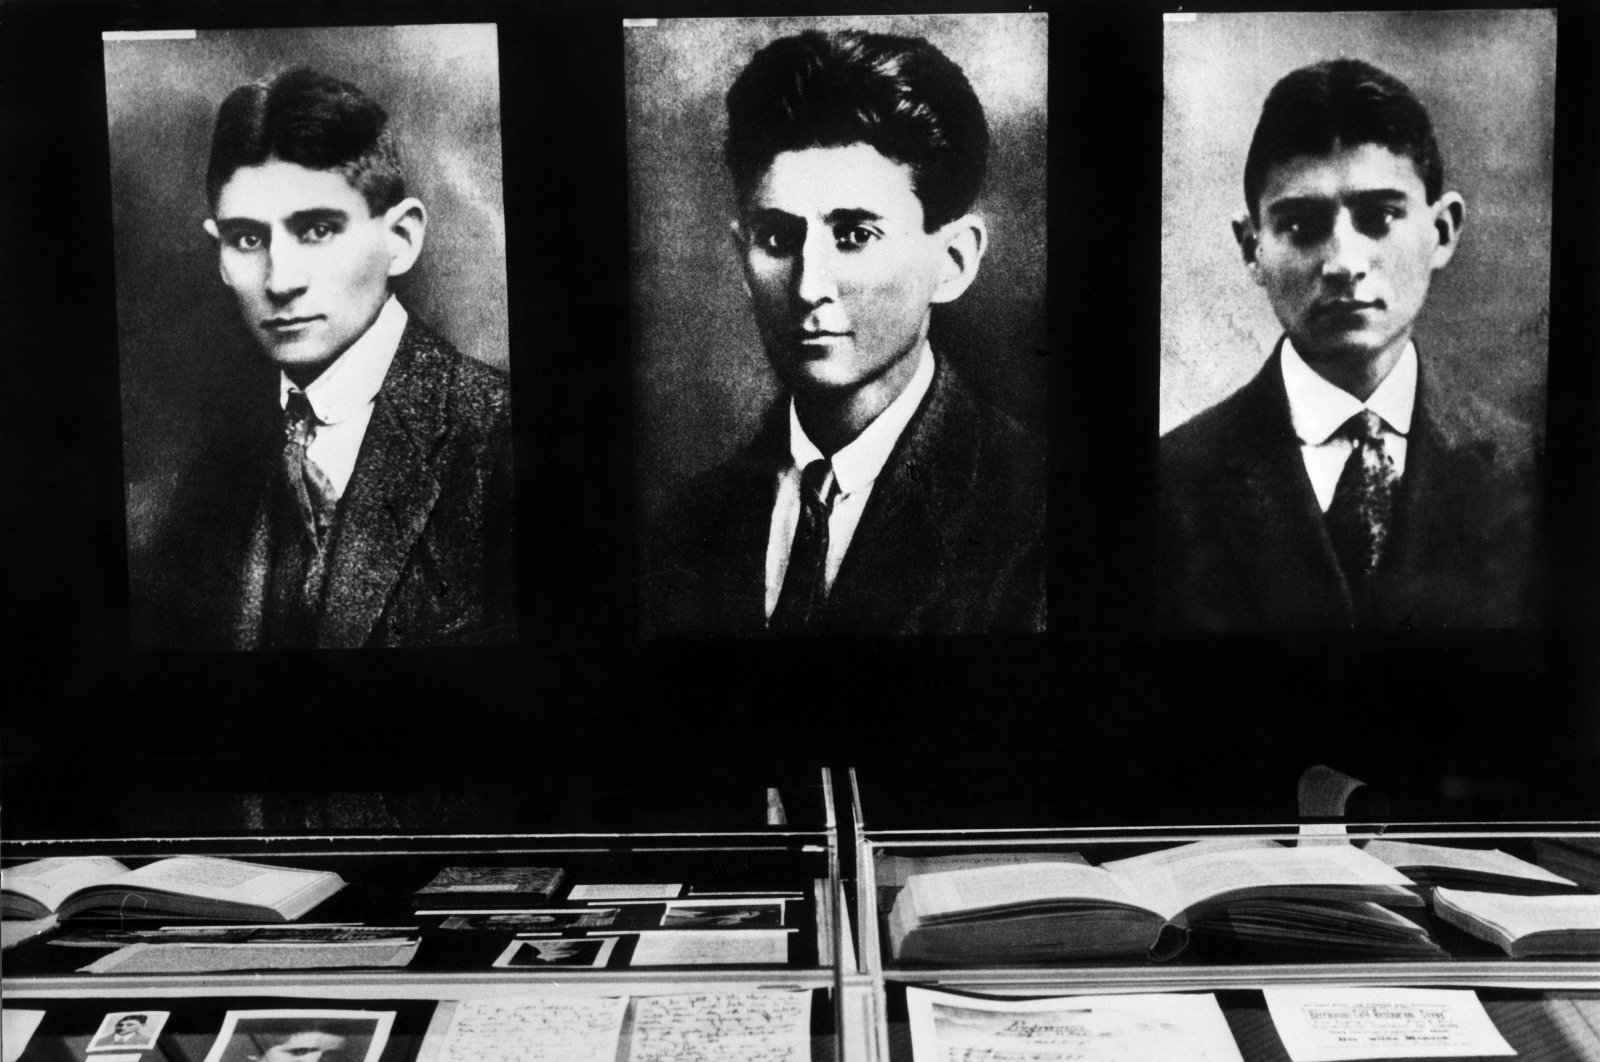 Prague-born writer Franz Kafka died in a sanatorium in Kierling, Austria. (Getty Images Photo)